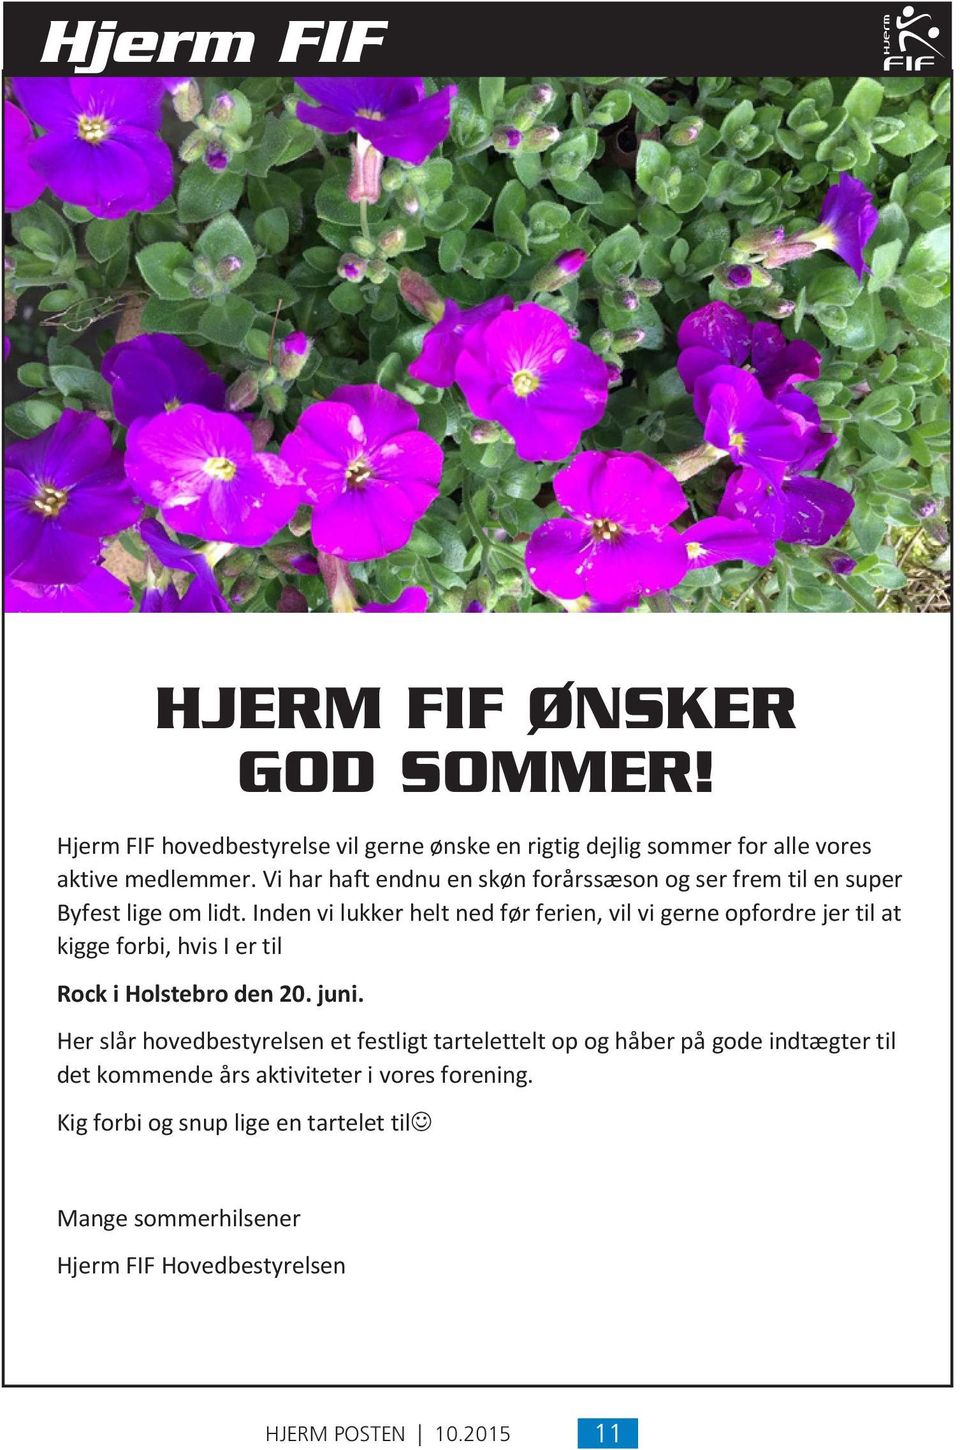 Hjerm FIF ønsker god sommer! Hjerm Rock FIF i Holstebro hovedbestyrelse den 20. juni. vil gerne ønske en rigtig dejlig sommer for alle vores aktive Her medlemmer.